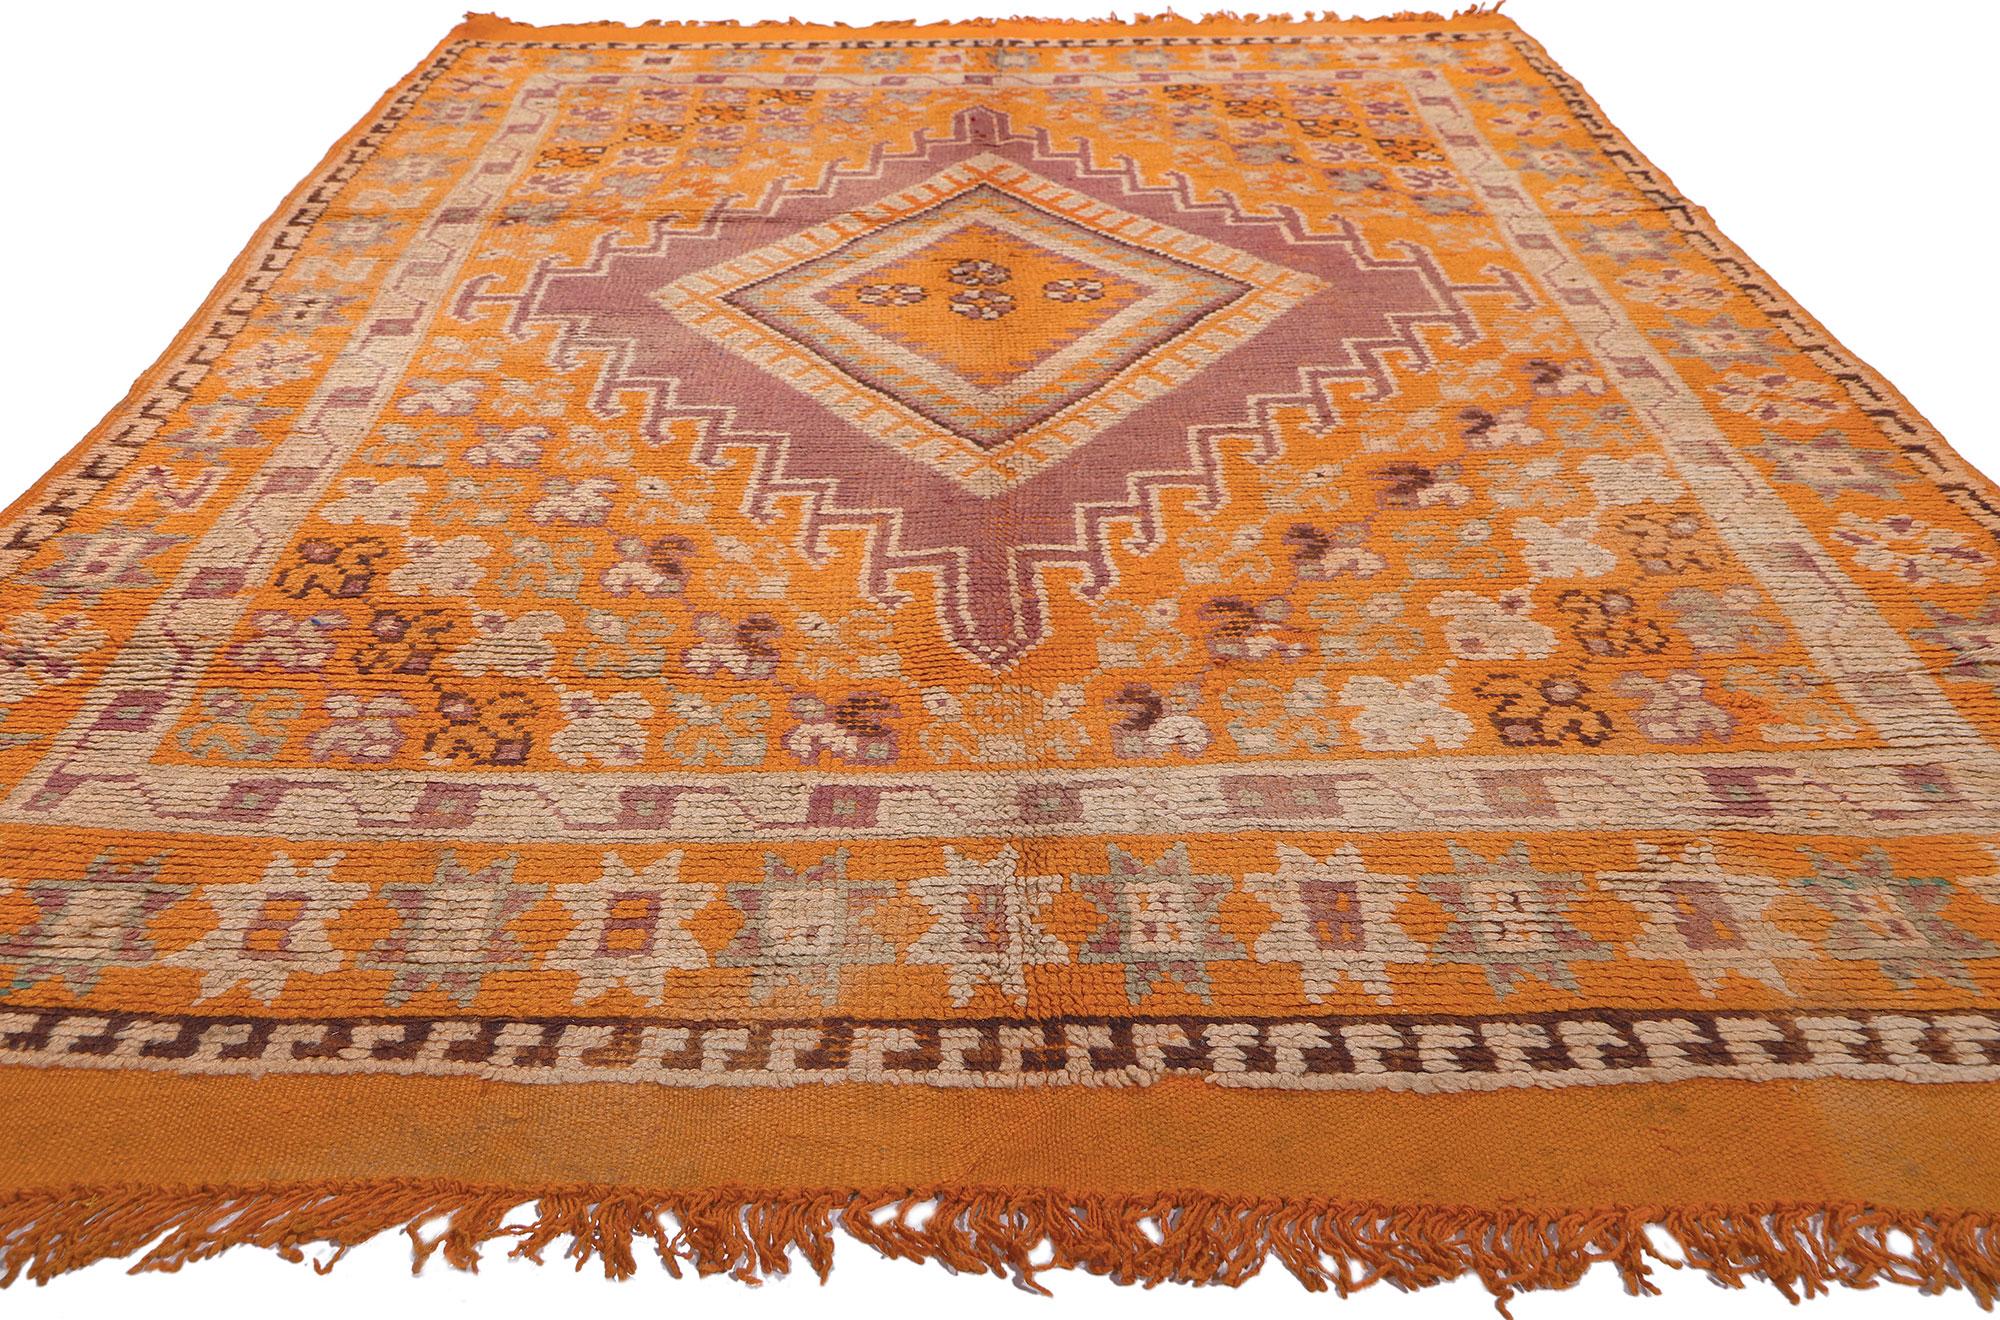 Tribal Tapis marocain orange, enchantement tribal rencontre le style bohème audacieux en vente